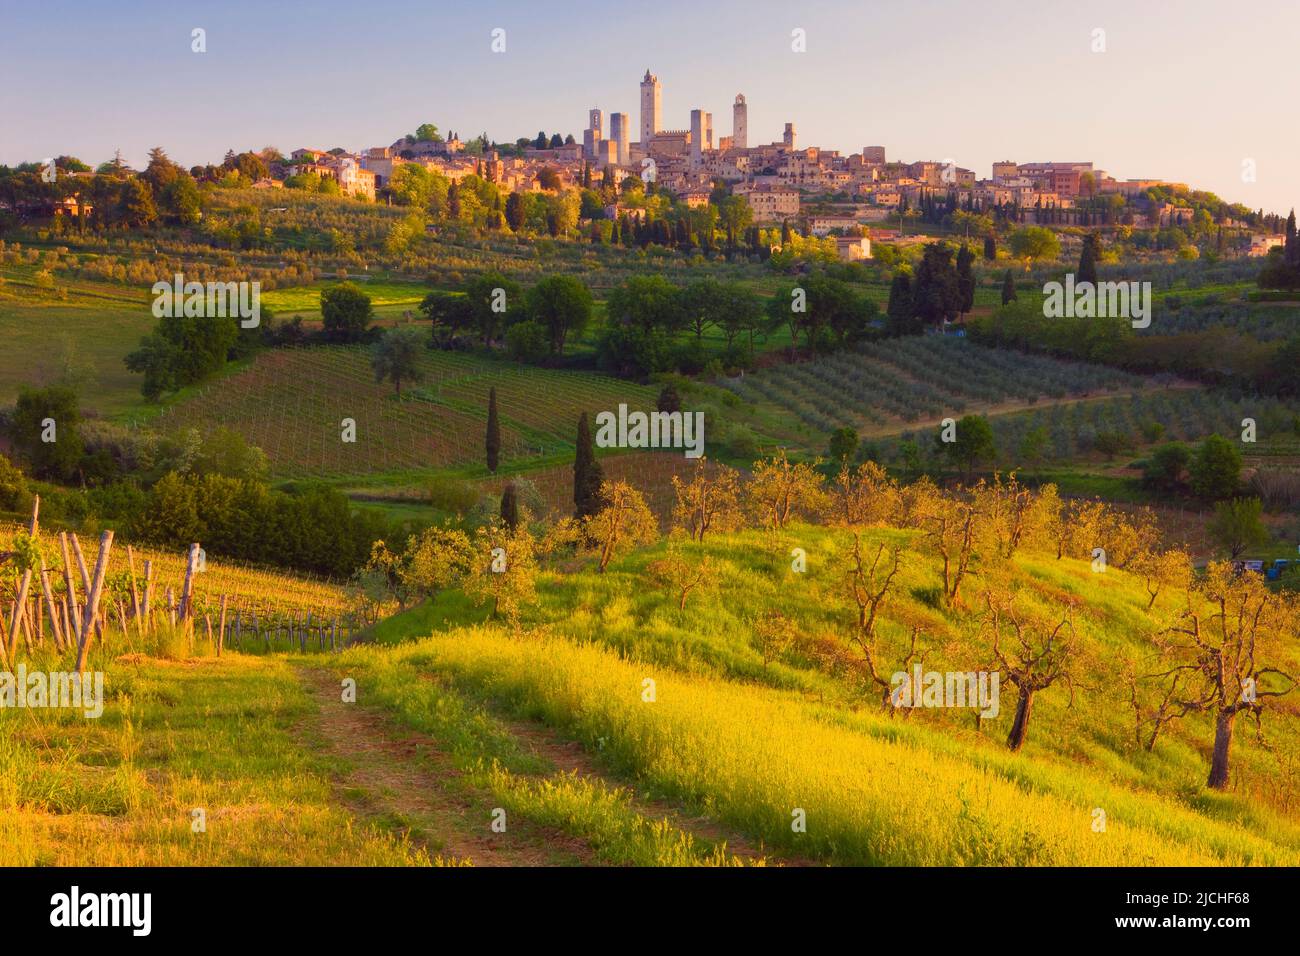 Medieval town of San Gimignano, Tuscany, Italy Stock Photo